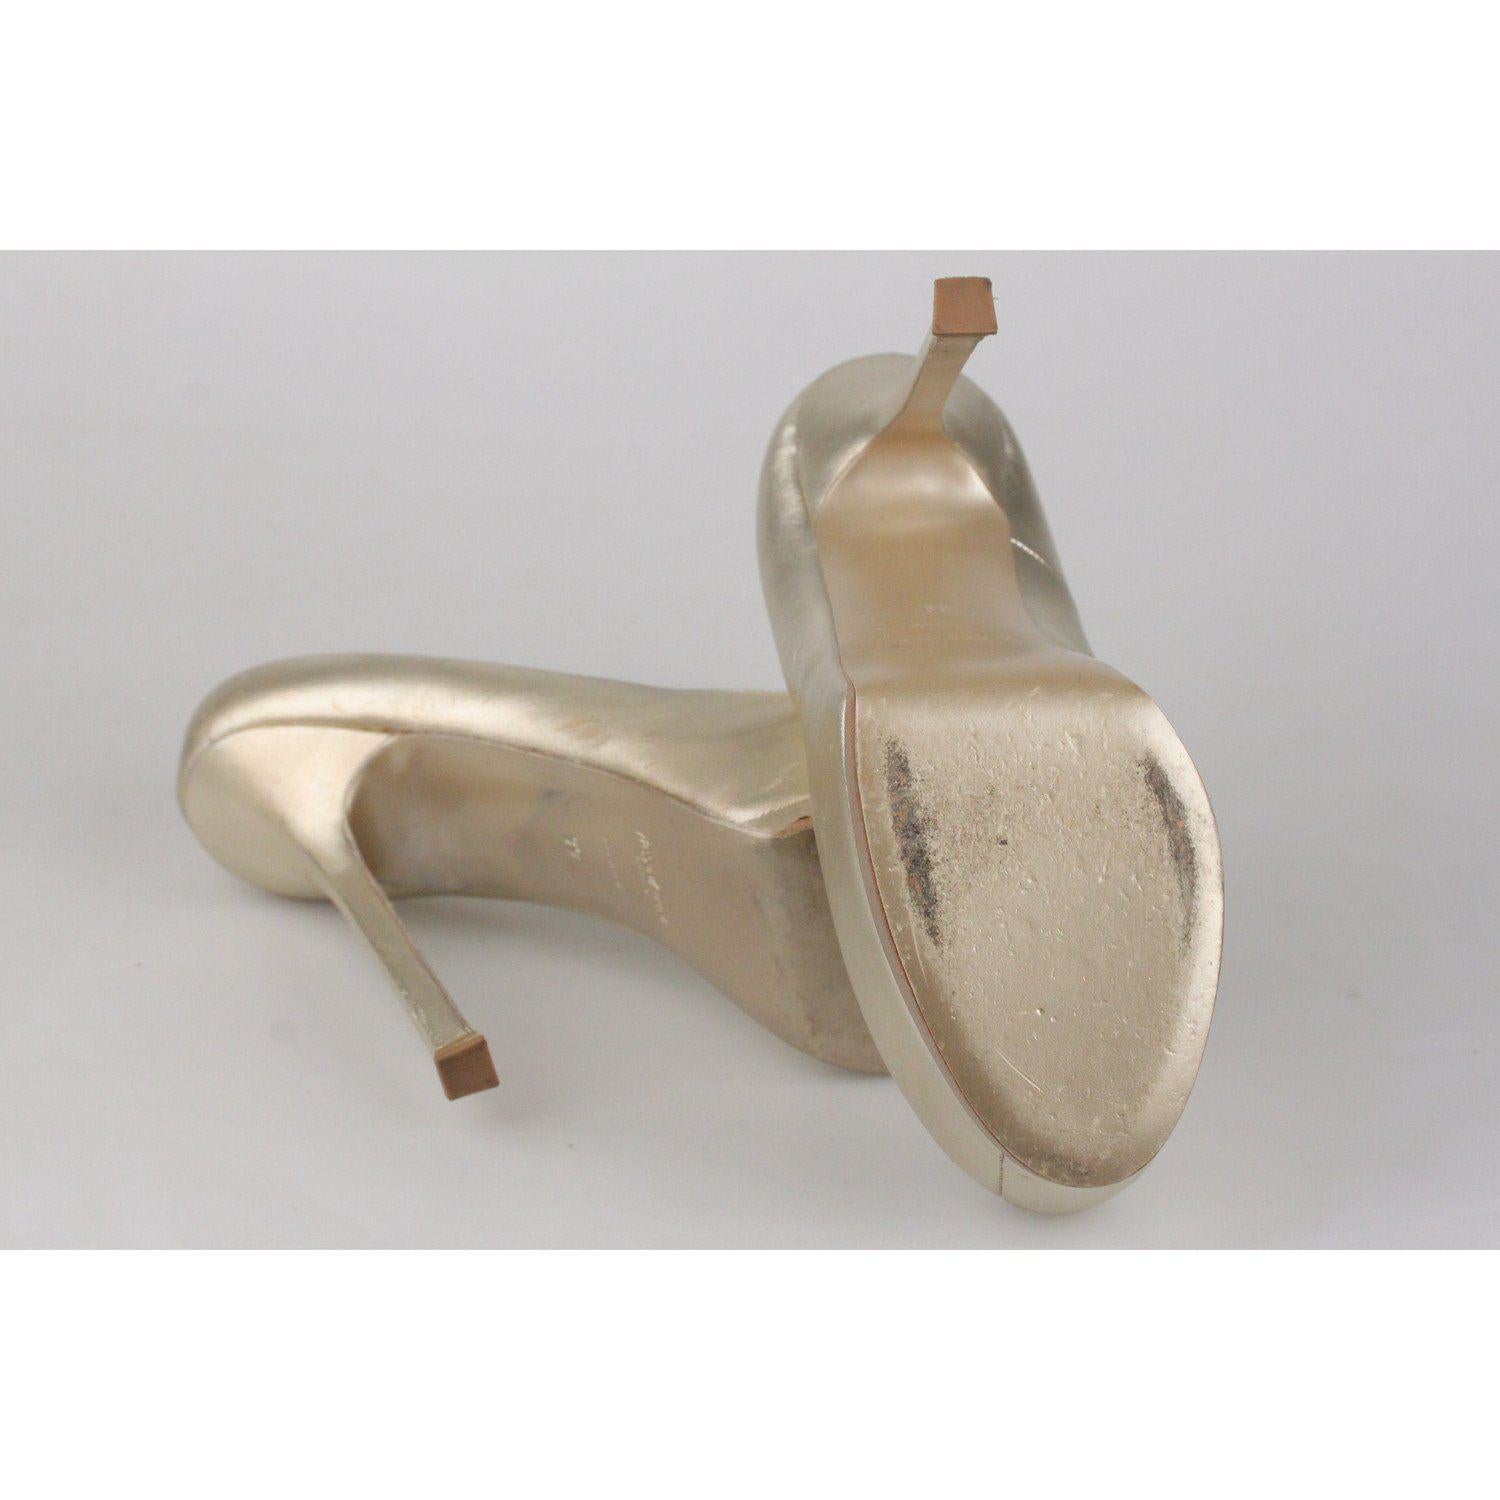 YVES SAINT LAURENT Gold Metal Leather Platform Pumps Heels Shoes Size 39 3